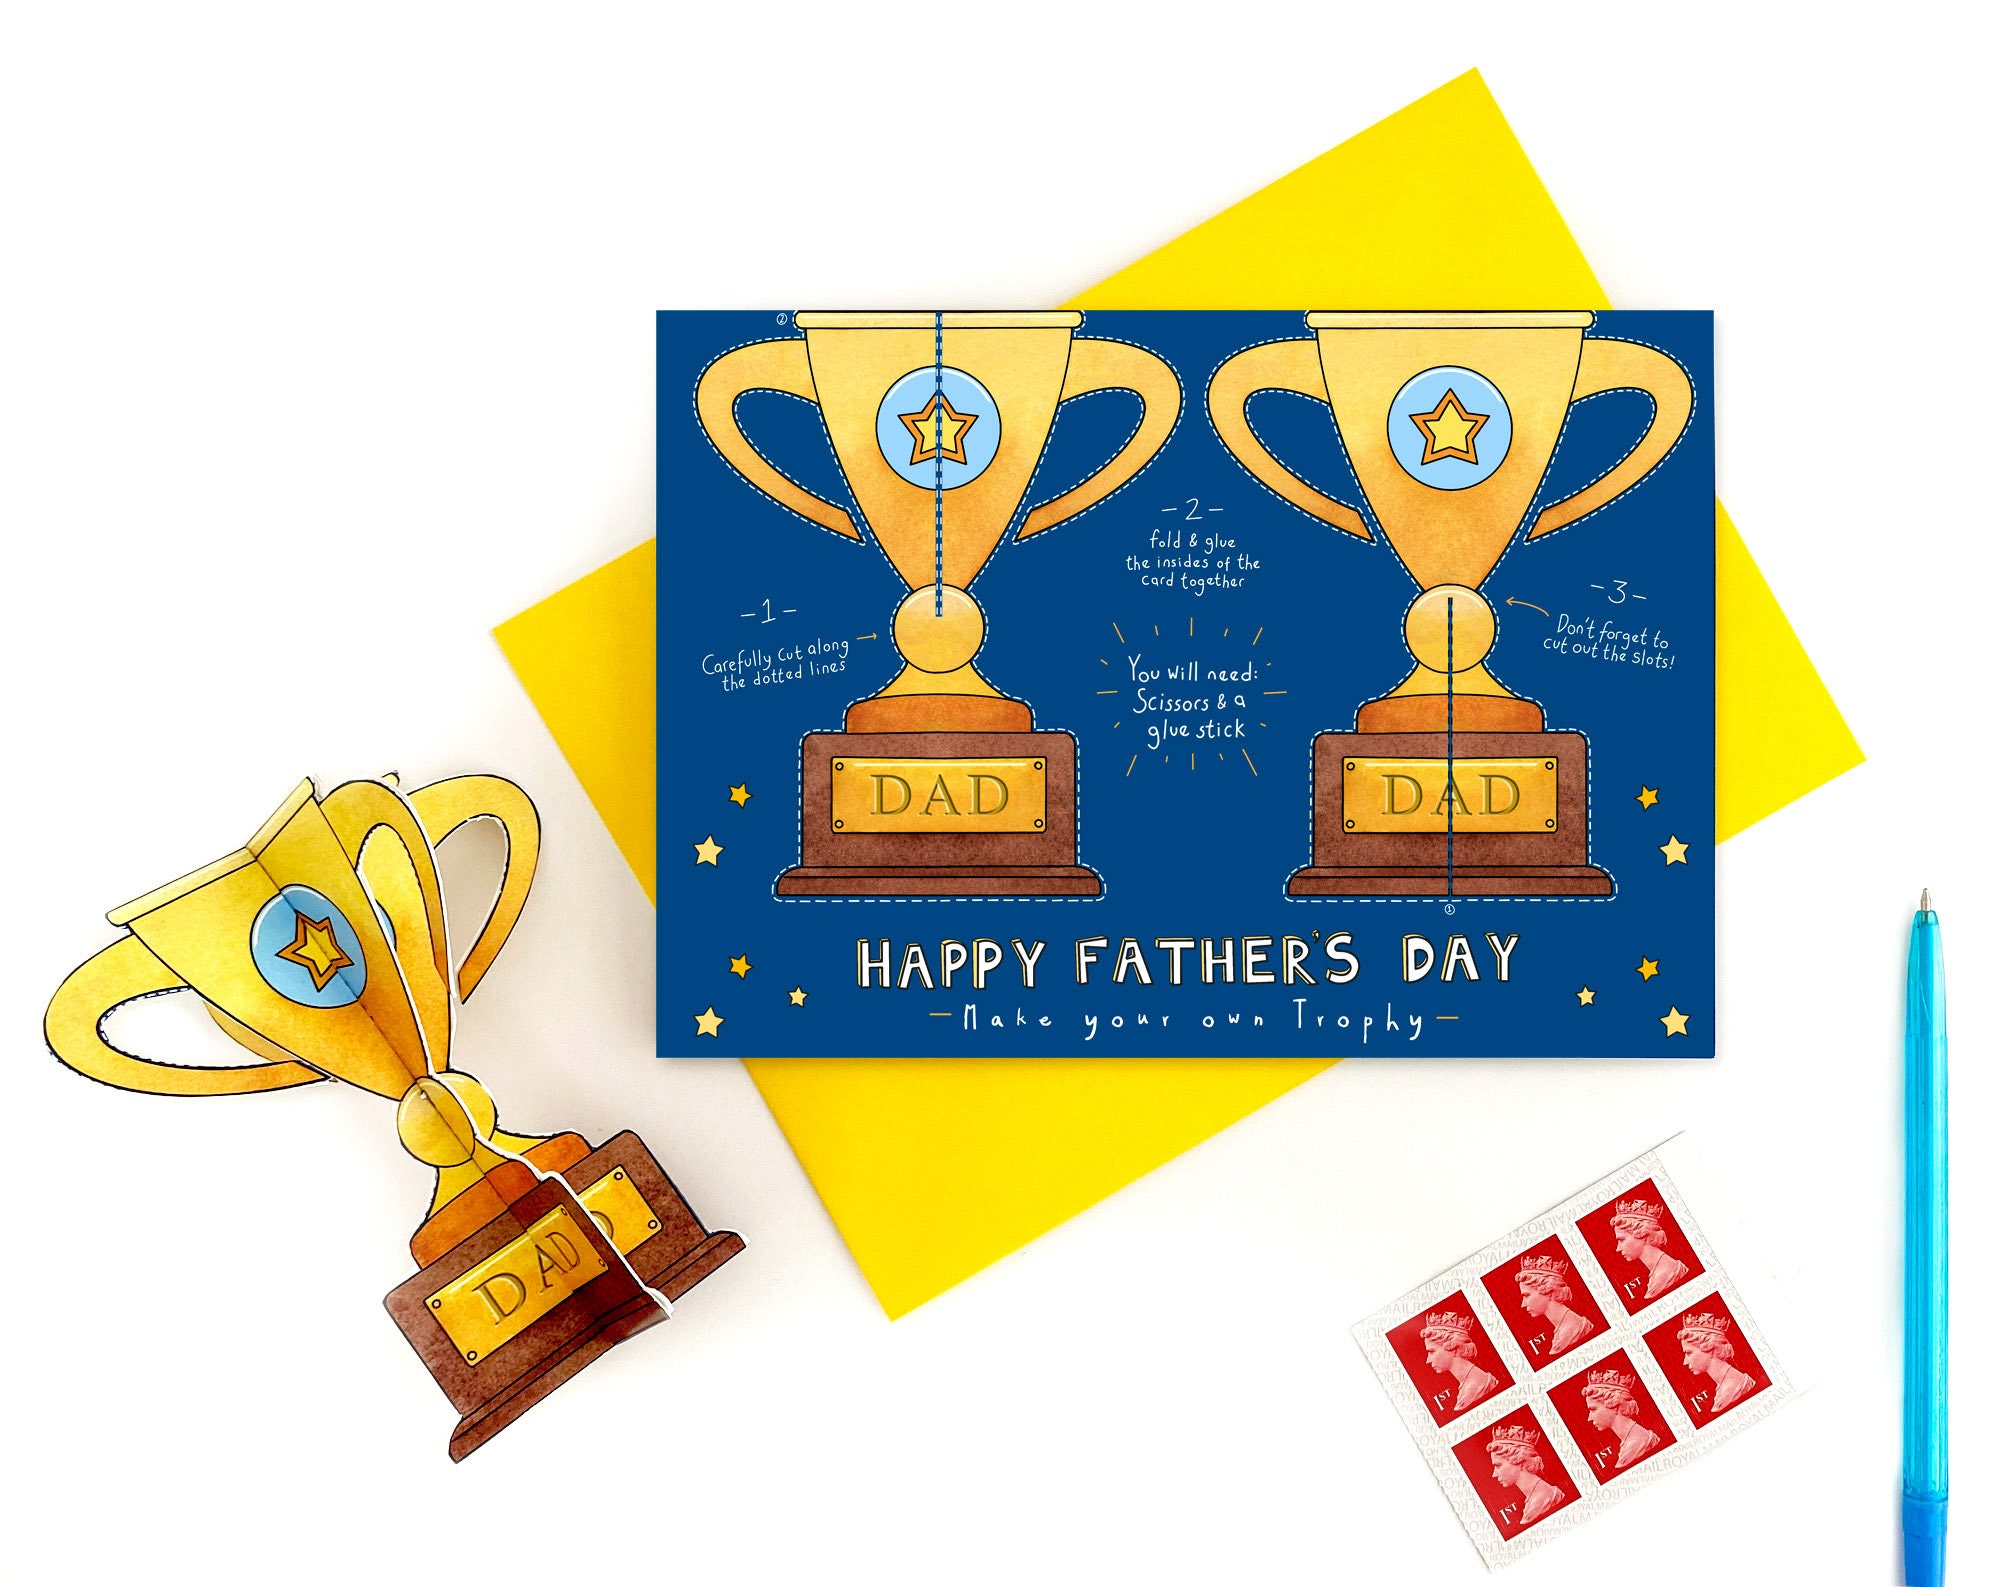 Great Dad Card 'Maak je eigen trofee' - Etsy